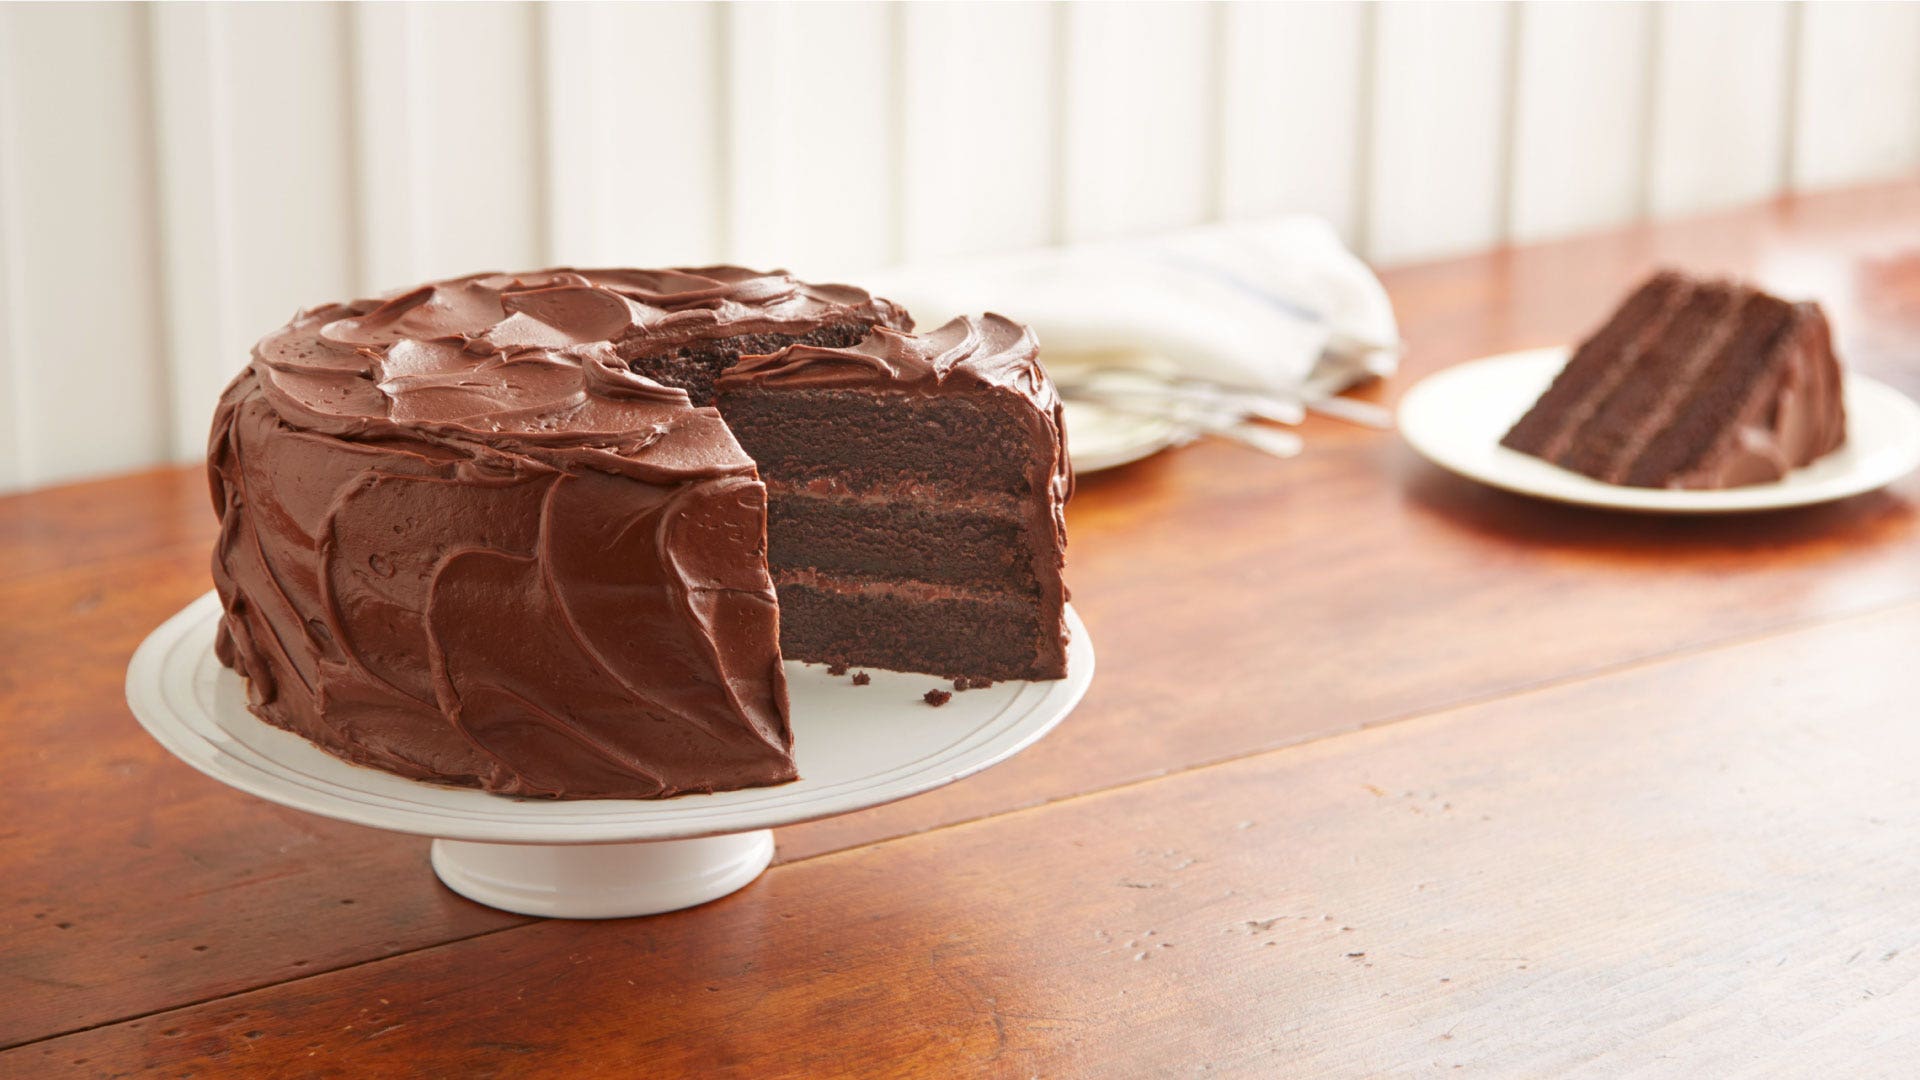 Gluten-Free HERSHEY'S "PERFECTLY CHOCOLATE" Chocolate Cake